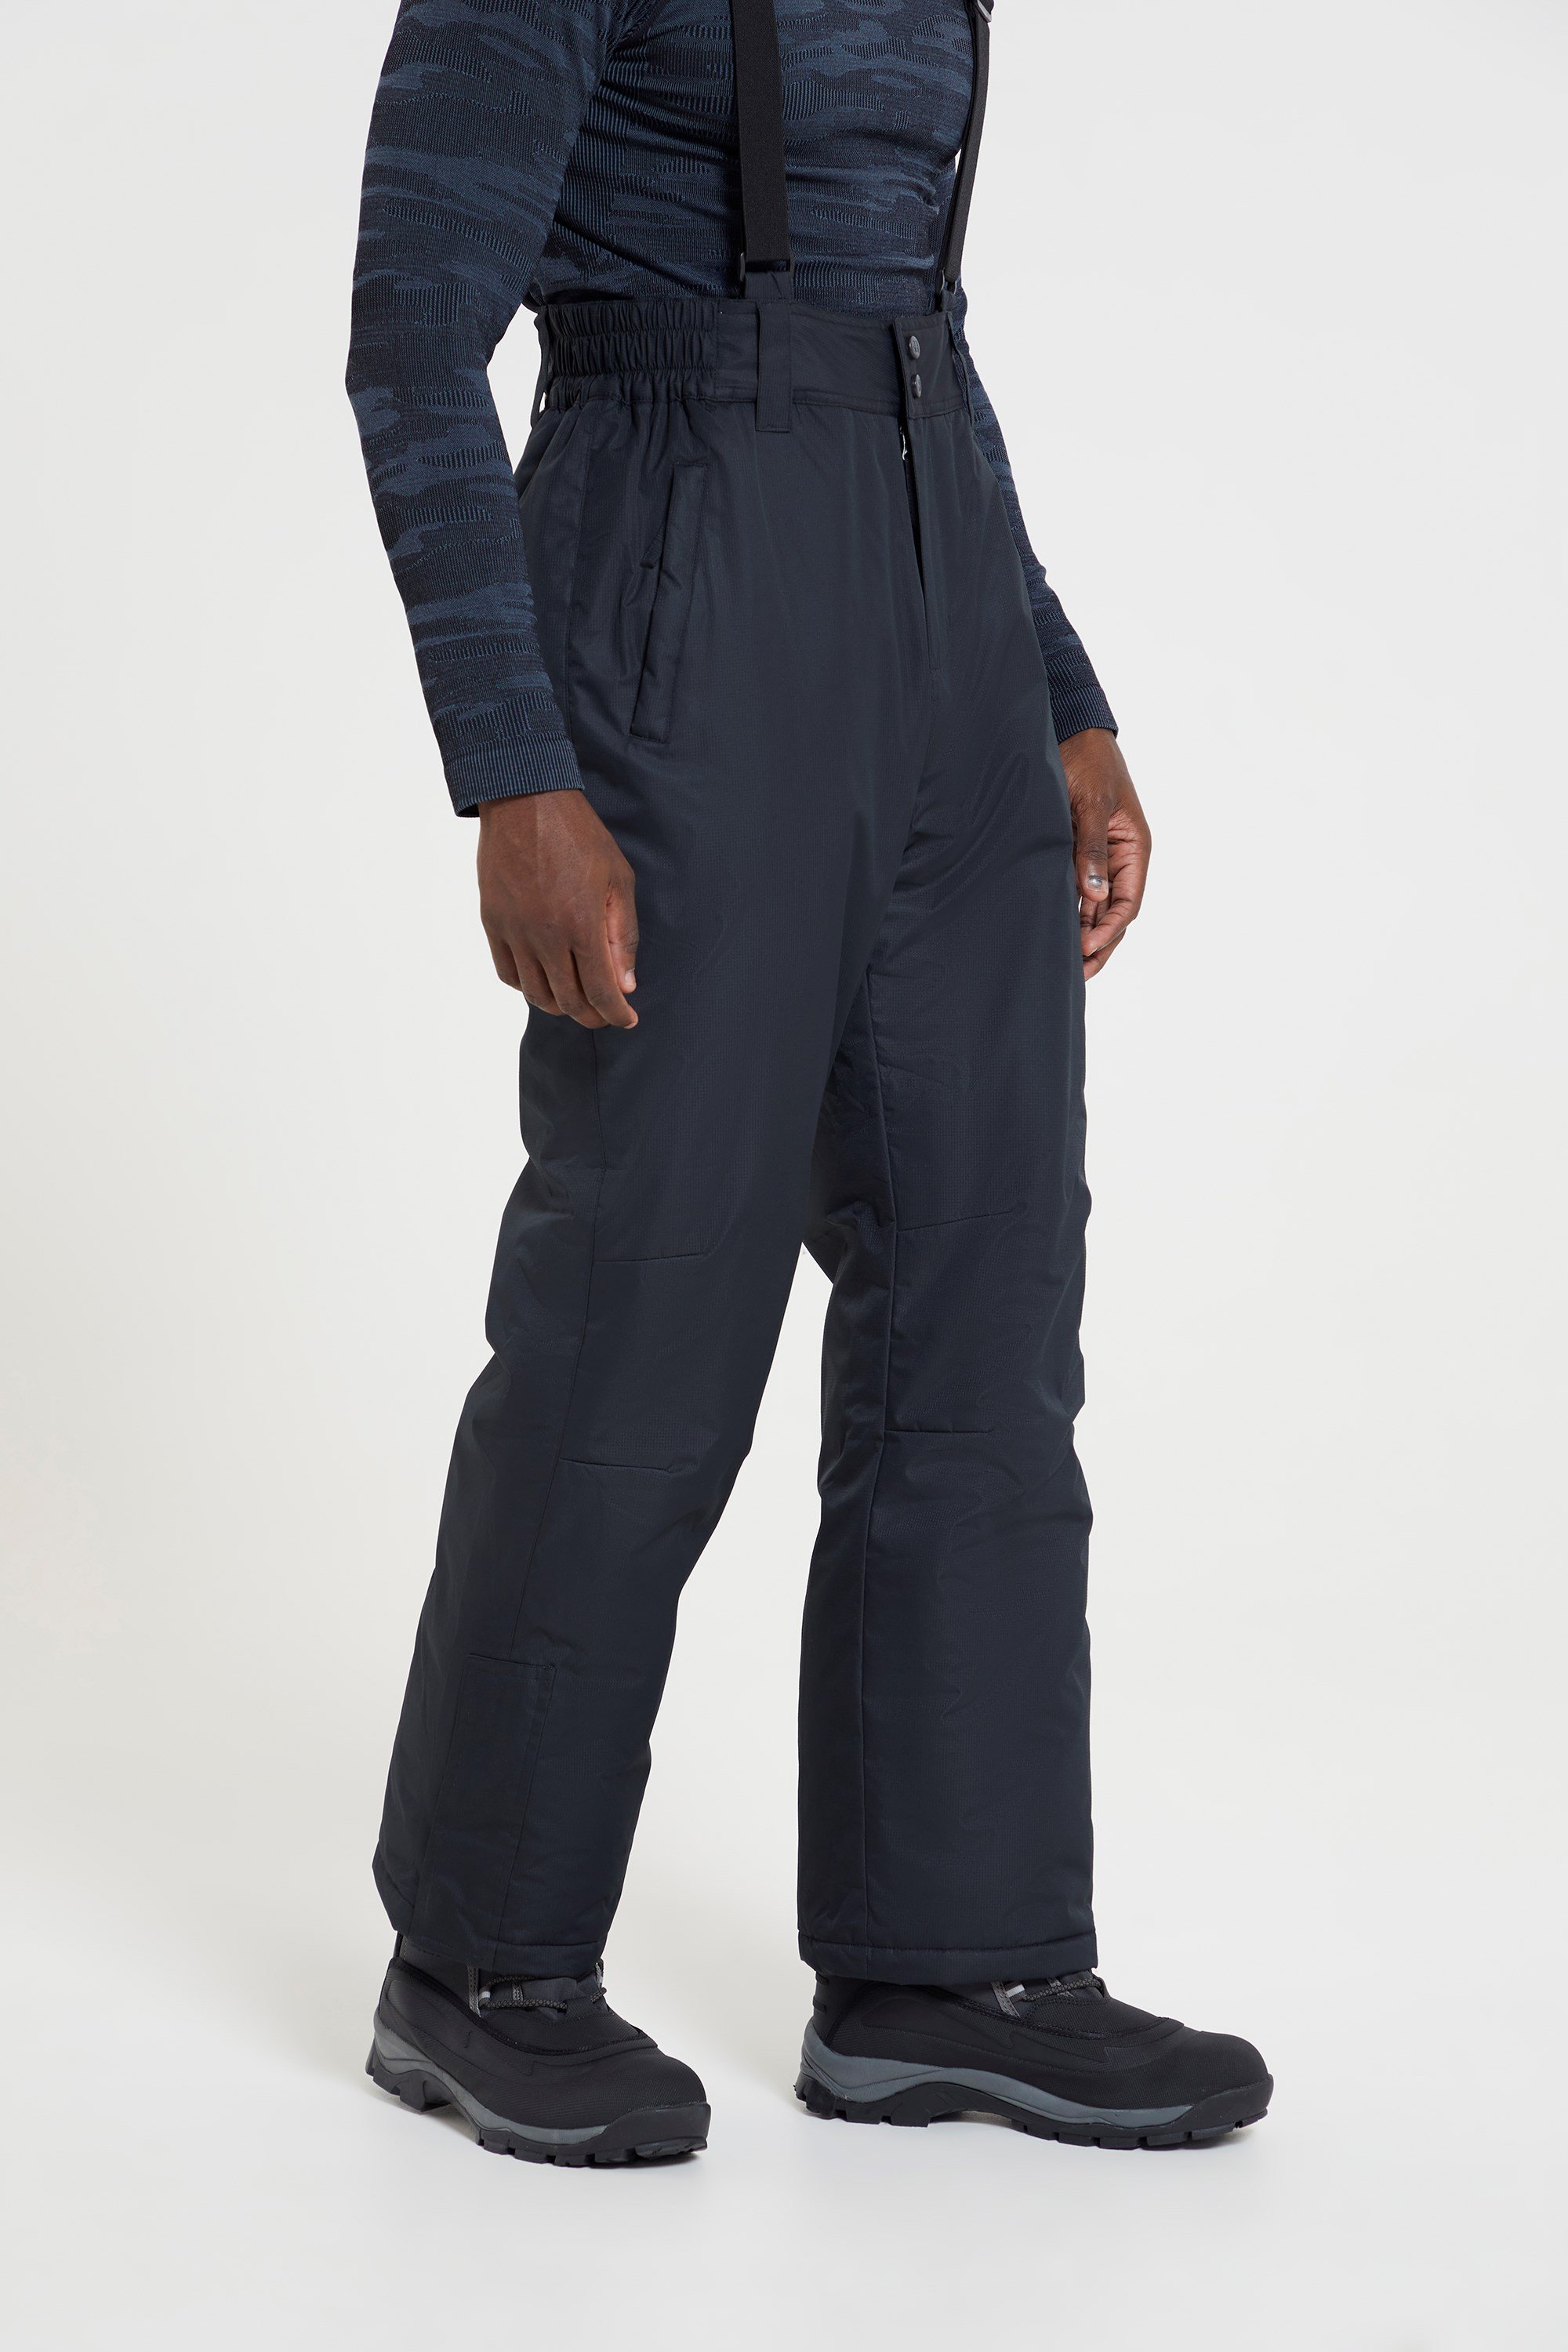 Ideale Indumento da Sci girovita Elasticizzato Pantaloni Uomo da Sci Mountain Warehouse Dusk Due Tasche Invernale Grigio Scuro XXS 